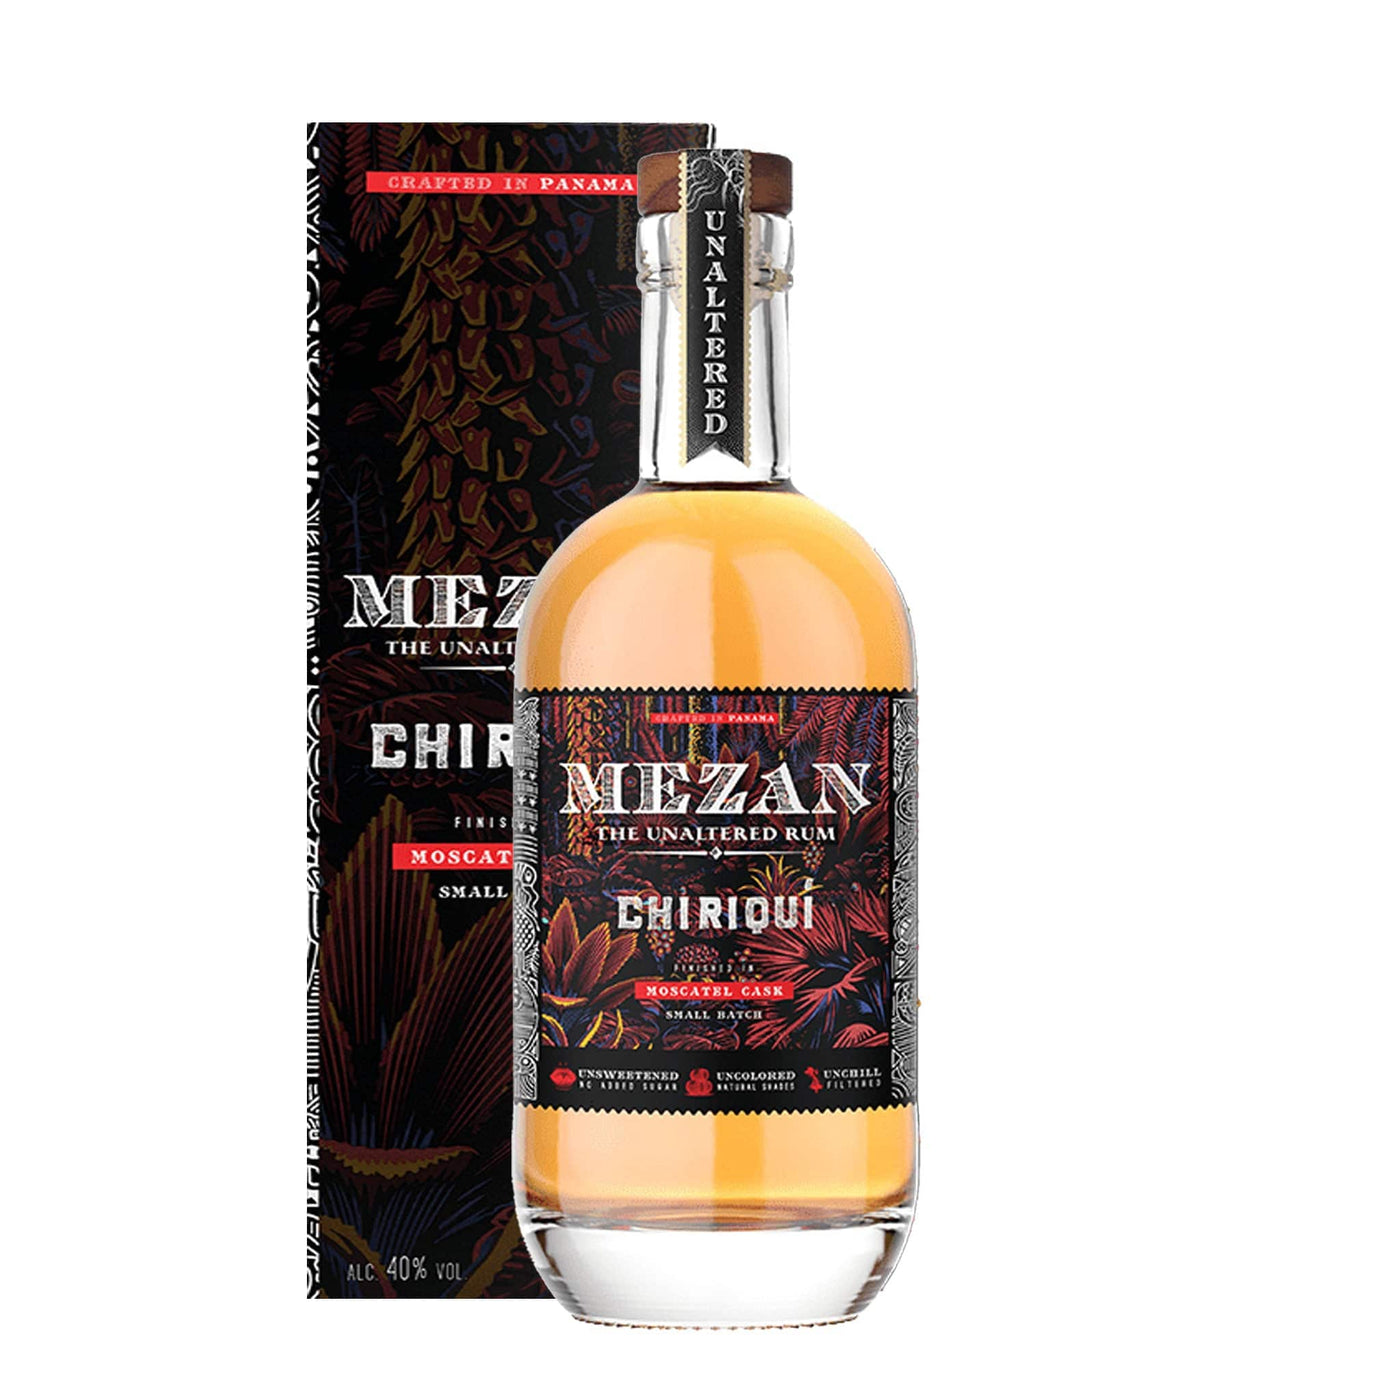 Mezan Panama Chiriqui Rum - Spiritly